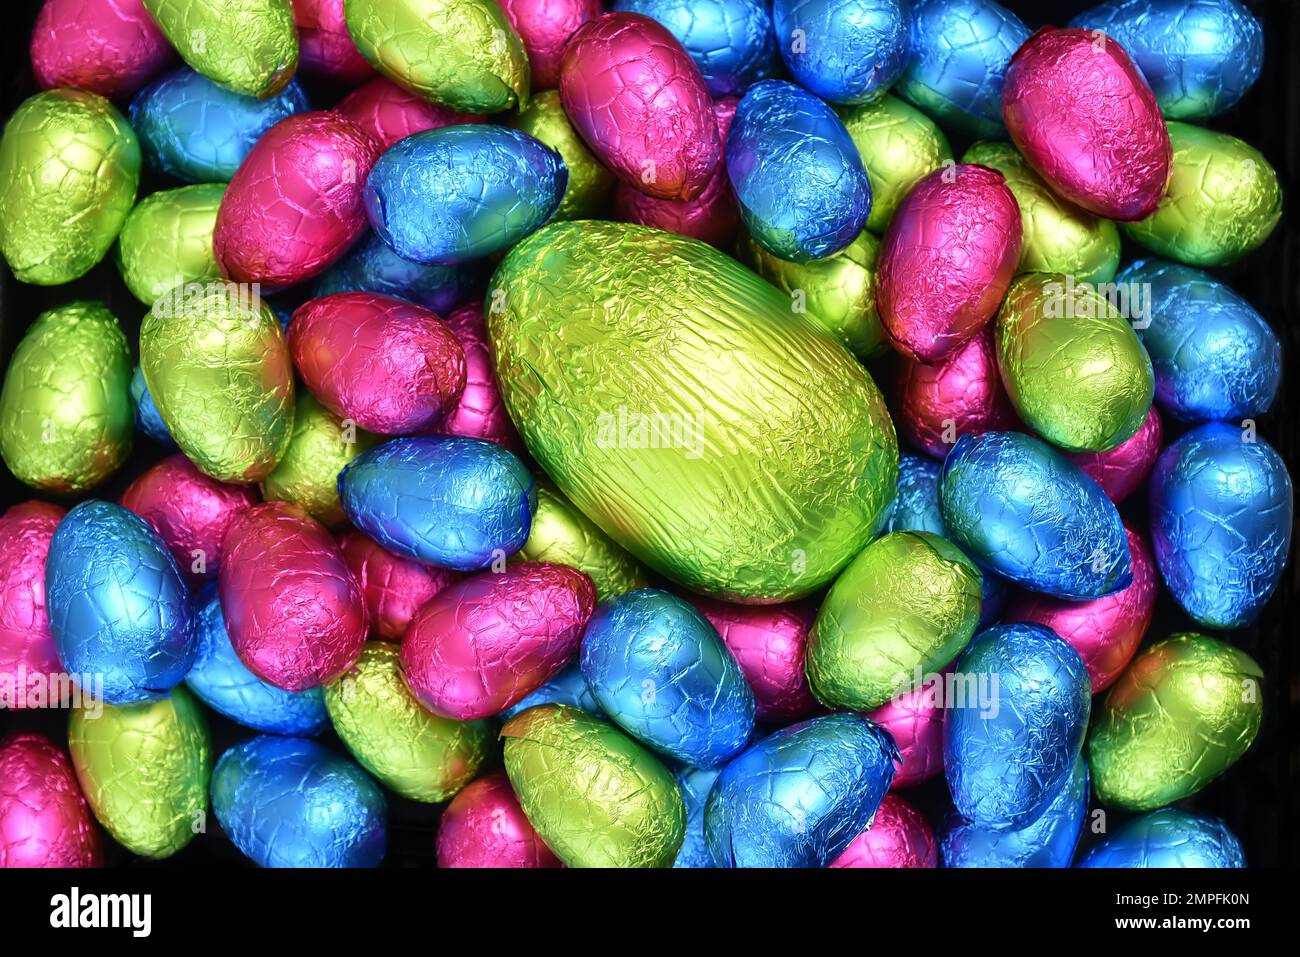 Pile ou groupe de plusieurs couleurs et différentes tailles d'oeufs de pâques au chocolat enveloppés d'une feuille colorée en rose, bleu, jaune et vert lime. Banque D'Images